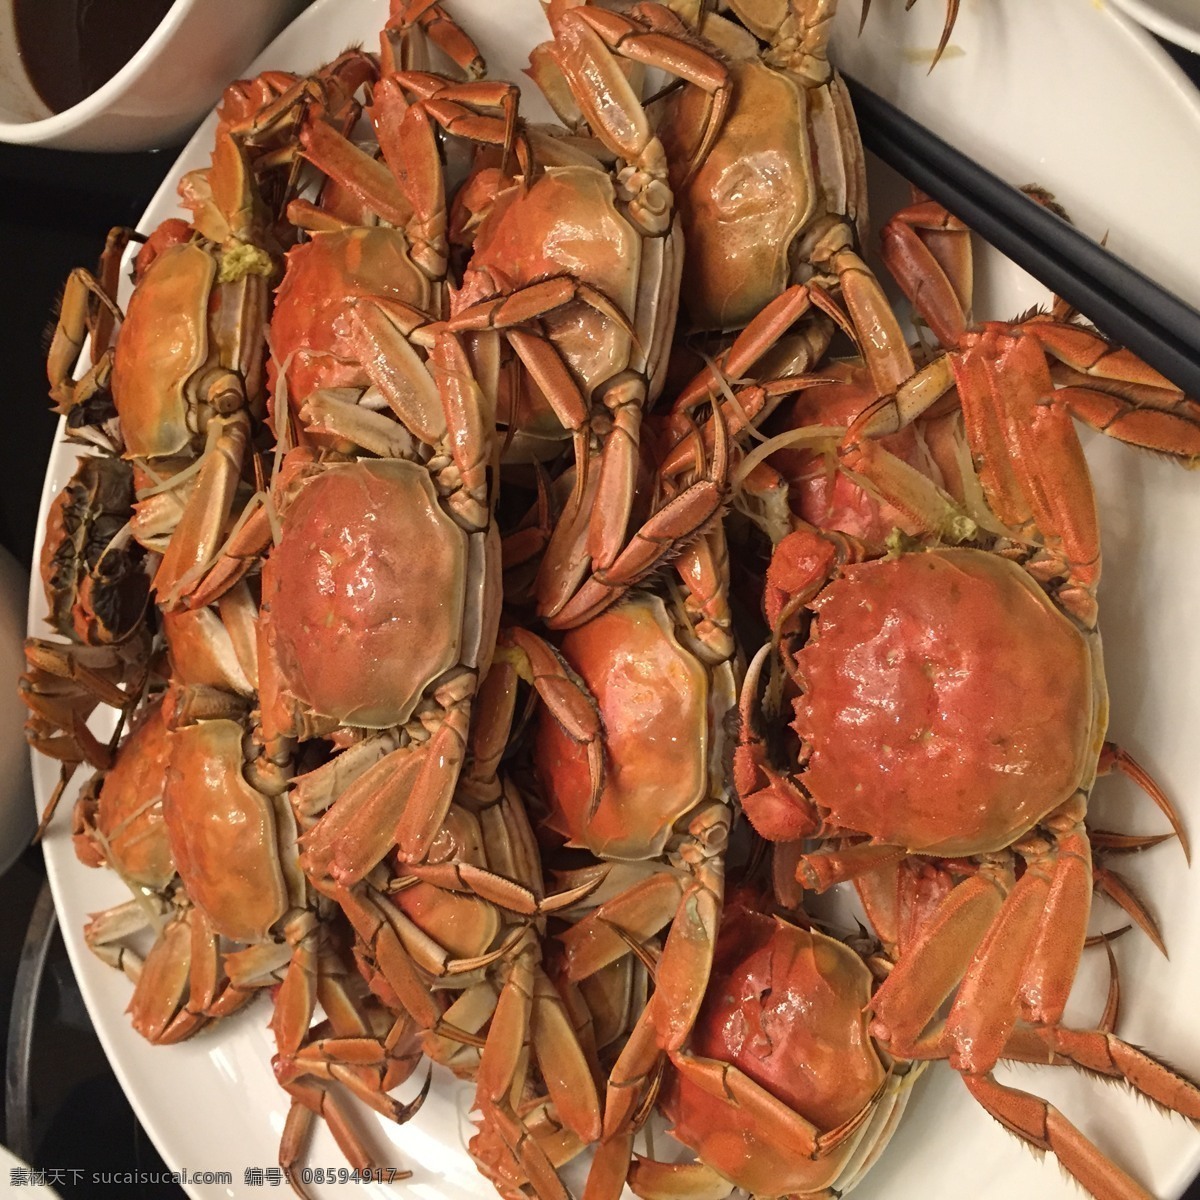 内蒙古螃蟹 螃蟹 熟螃蟹 好吃的螃蟹 红螃蟹 餐饮美食 食物原料